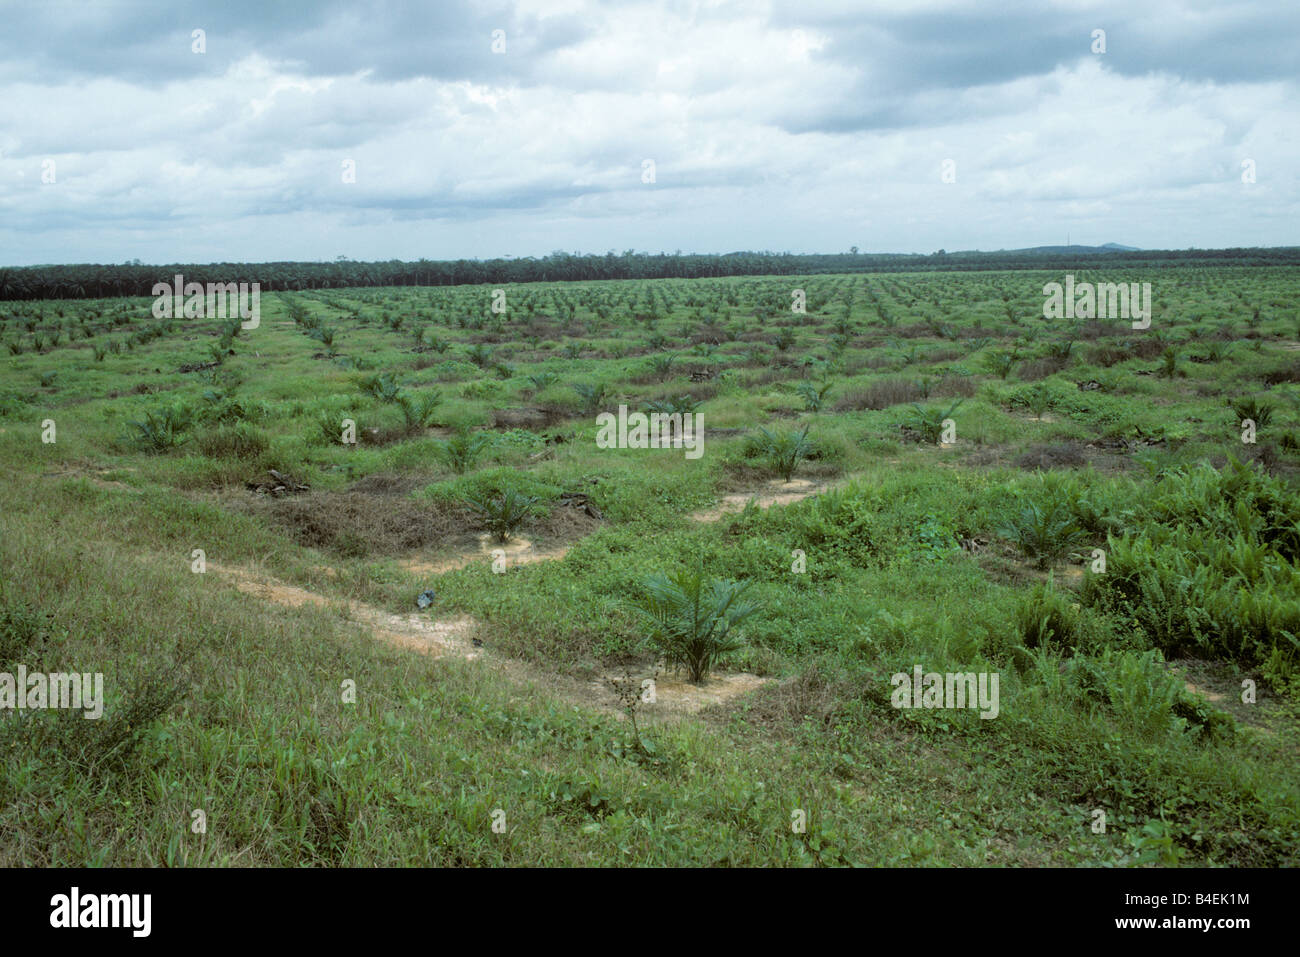 Los jóvenes plantaciones de aceite de palma en la zona despejada para la plantación de Malasia Foto de stock